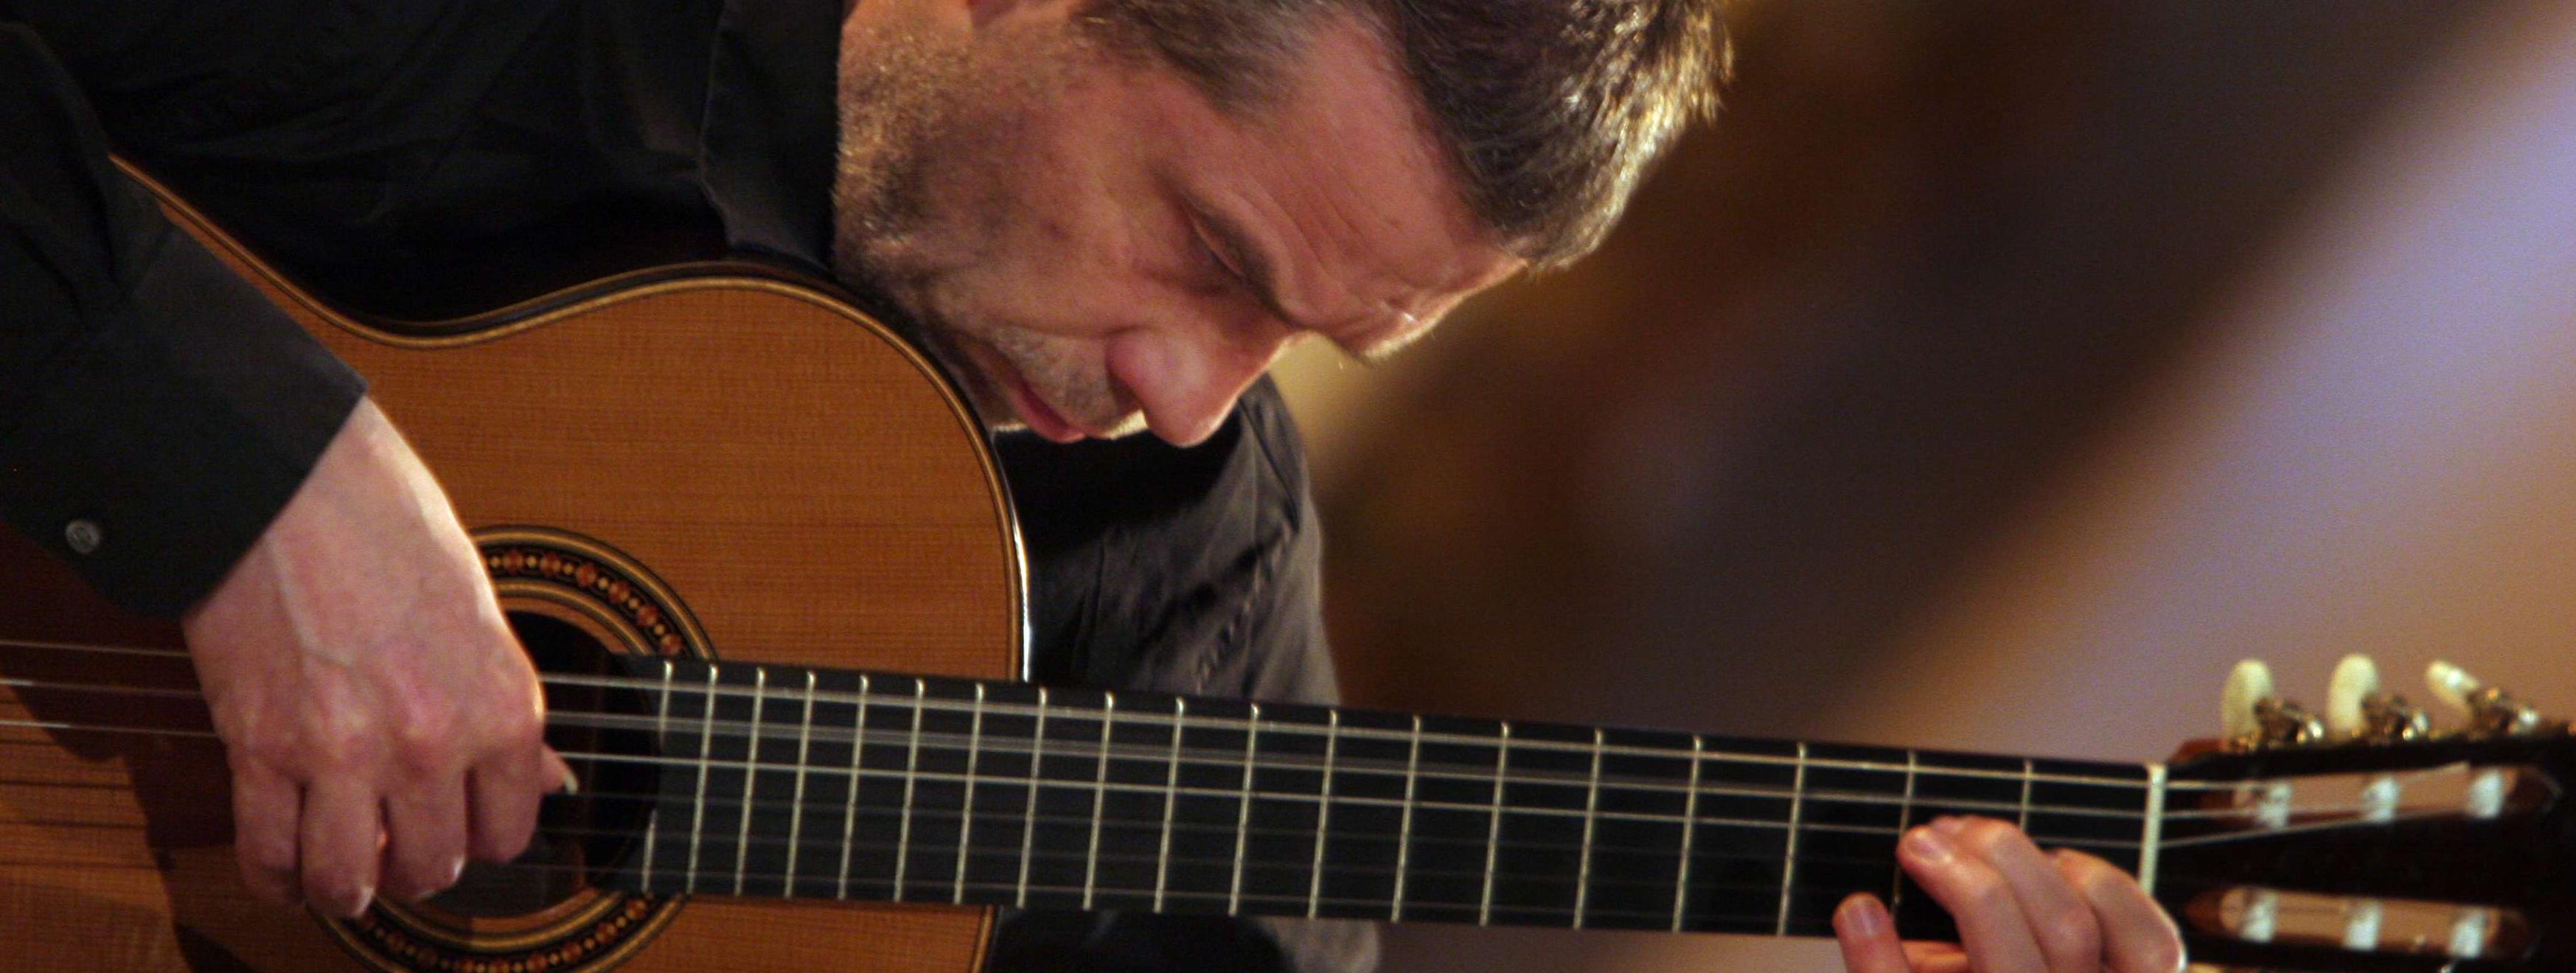 Friedemann Wuttke sitzt dicht geneigt über seine Gitarre und spielt darauf. Er wirkt geradezu vertieft in sein Instrument.